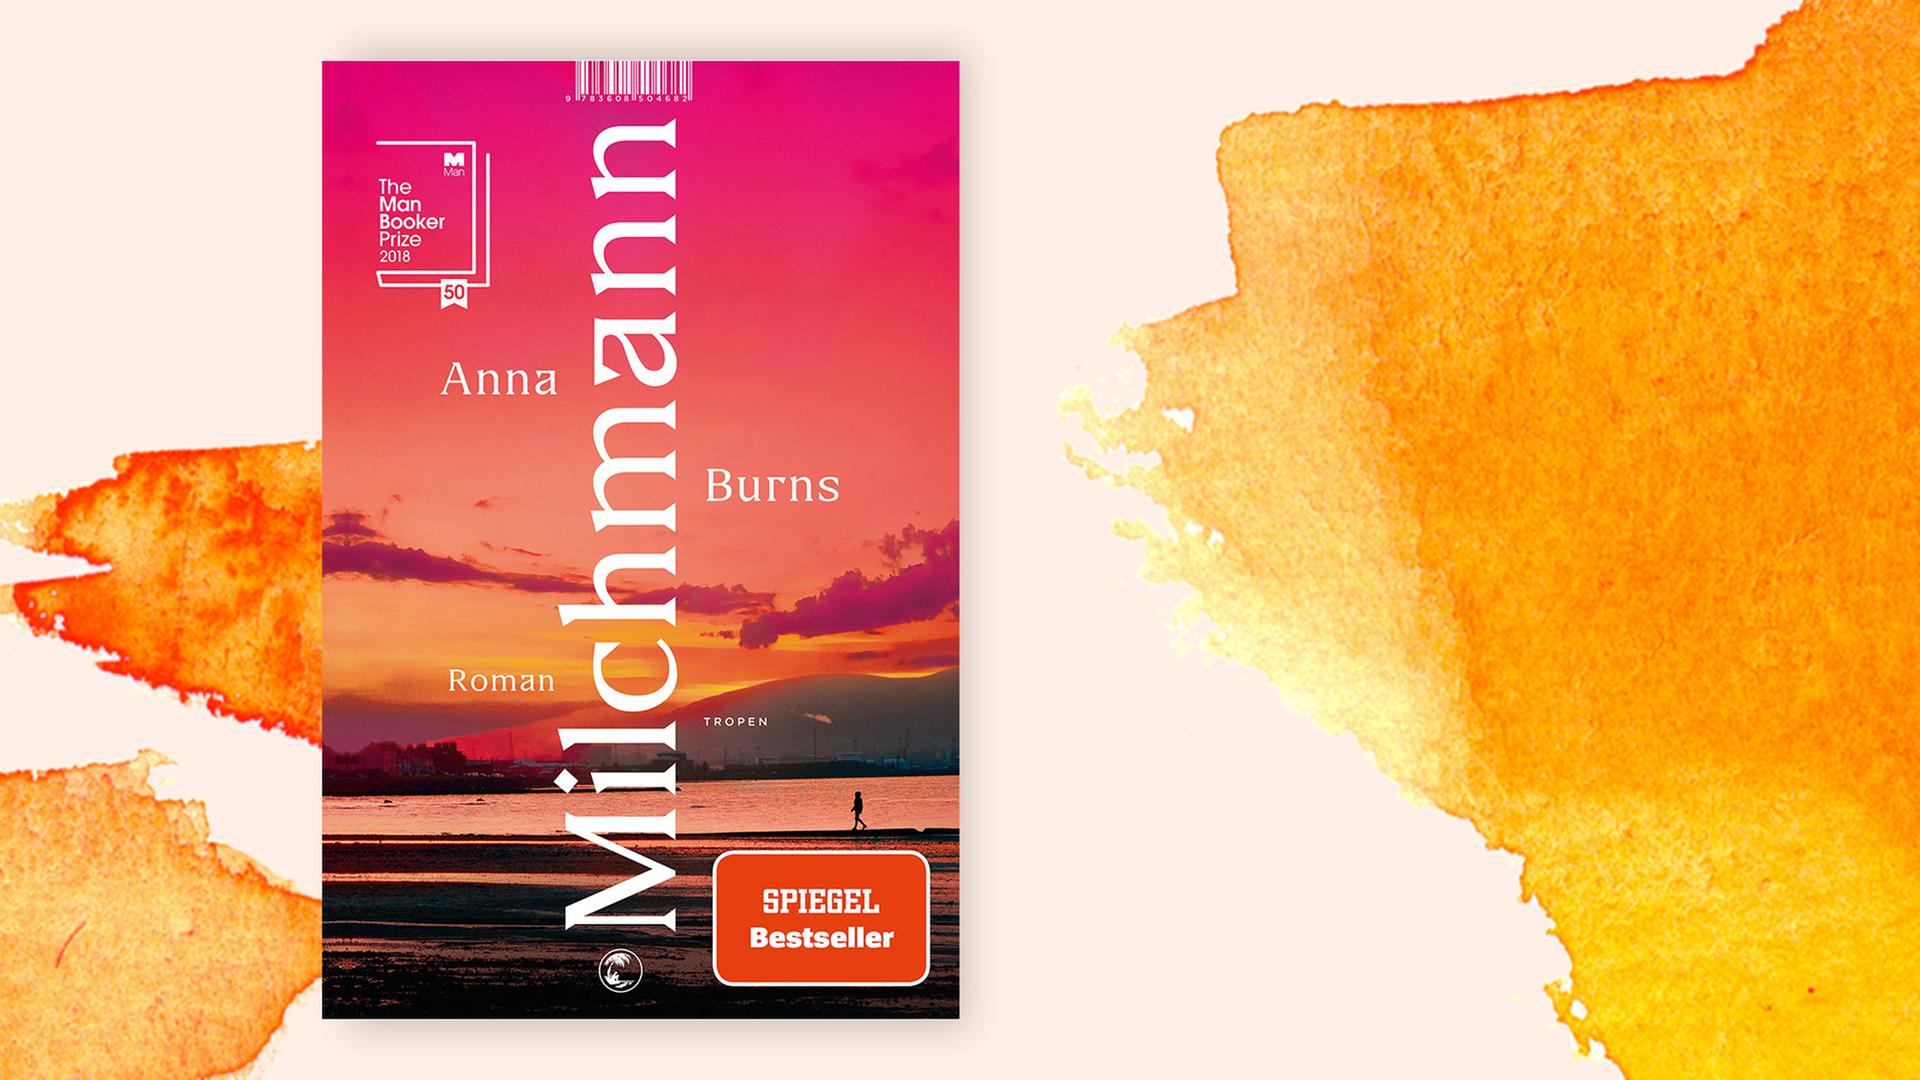 Das Cover von "Milchmann" auf orangefarbenem Hintergrund.